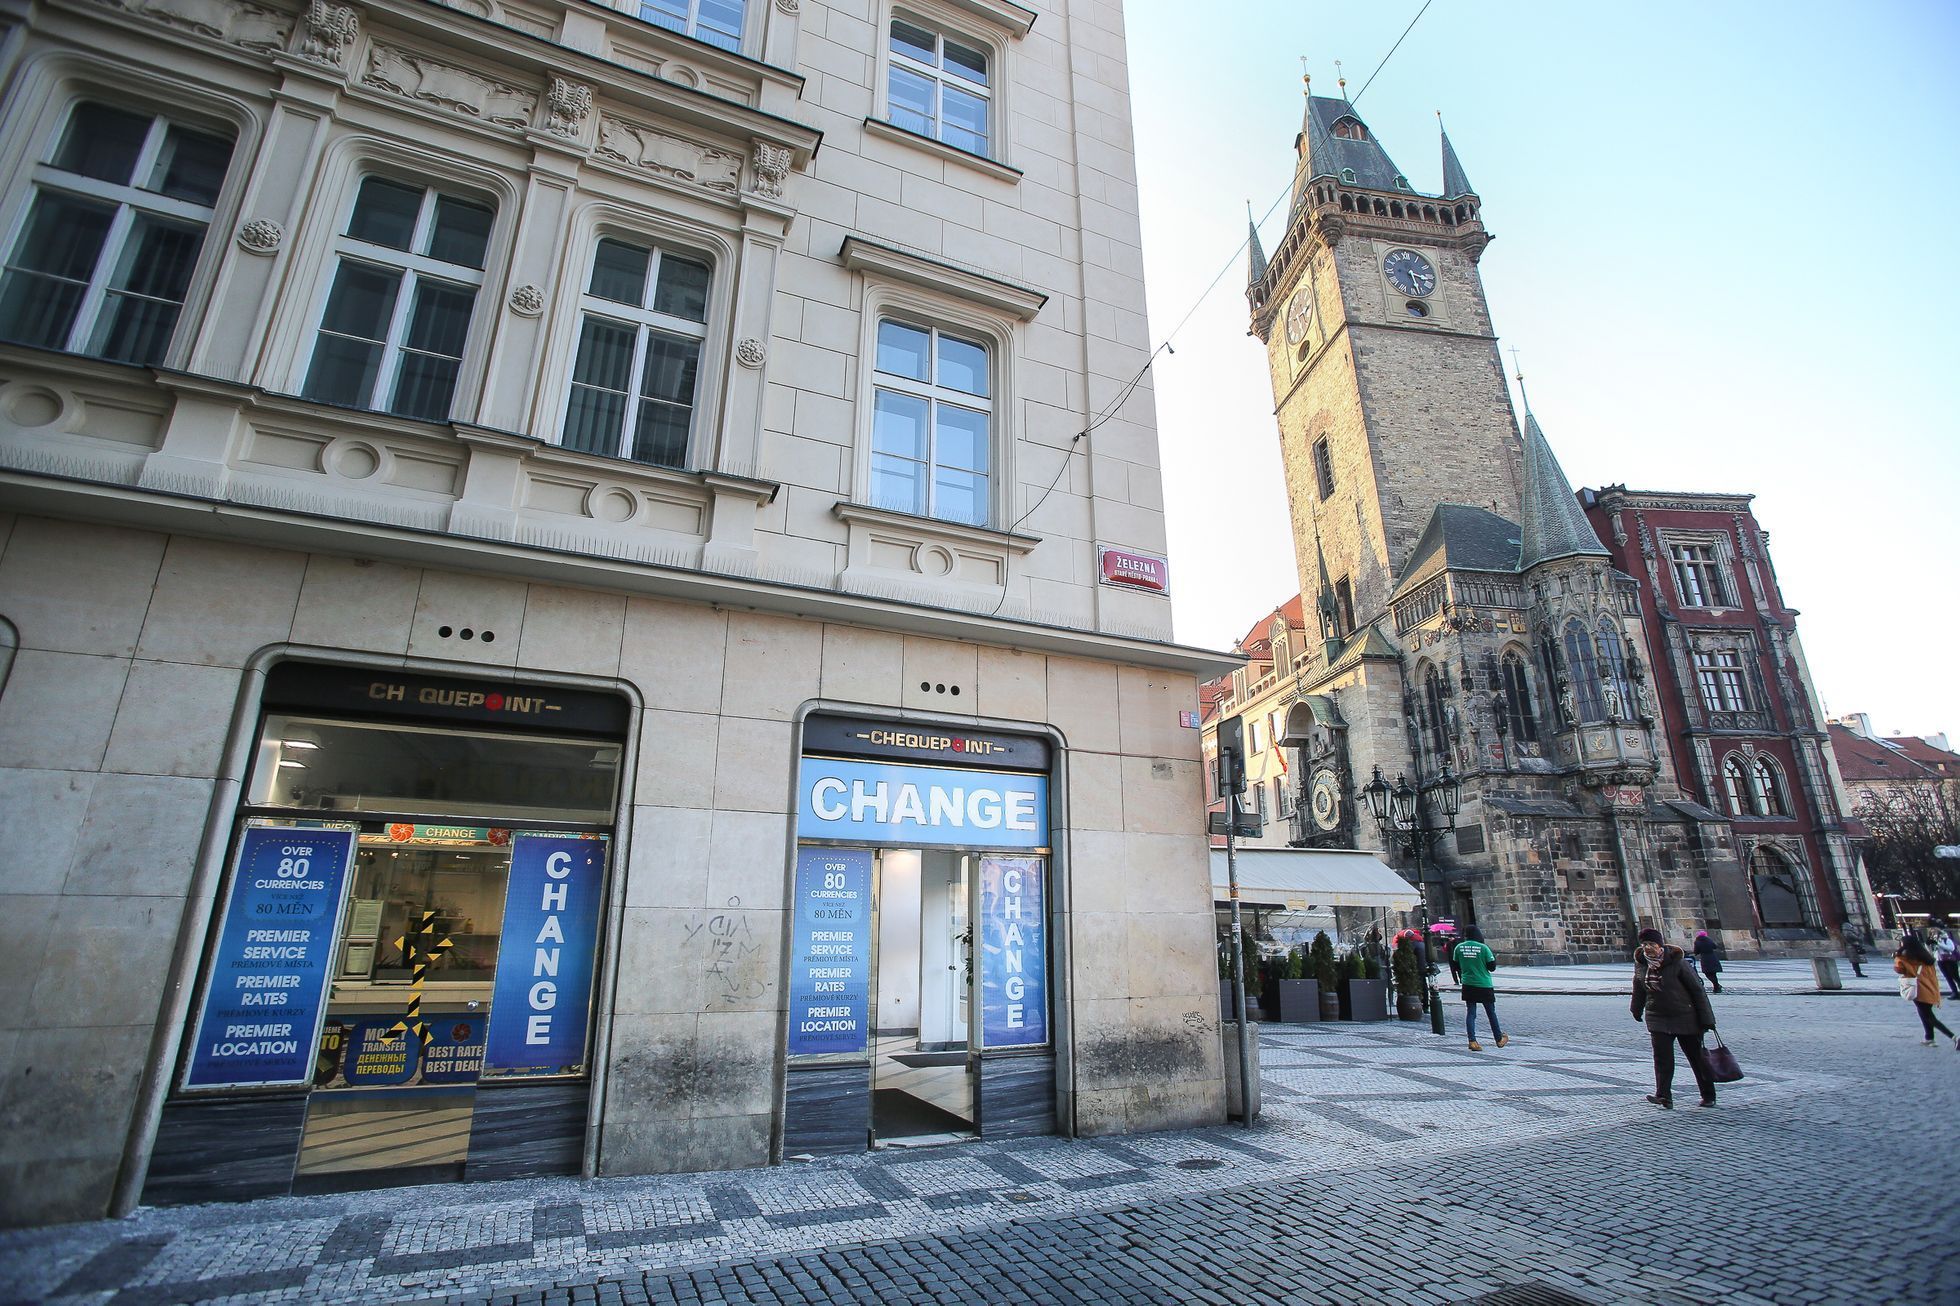 Směnárny v Praze s dvojími kurzy a dalšími nekalými praktikami